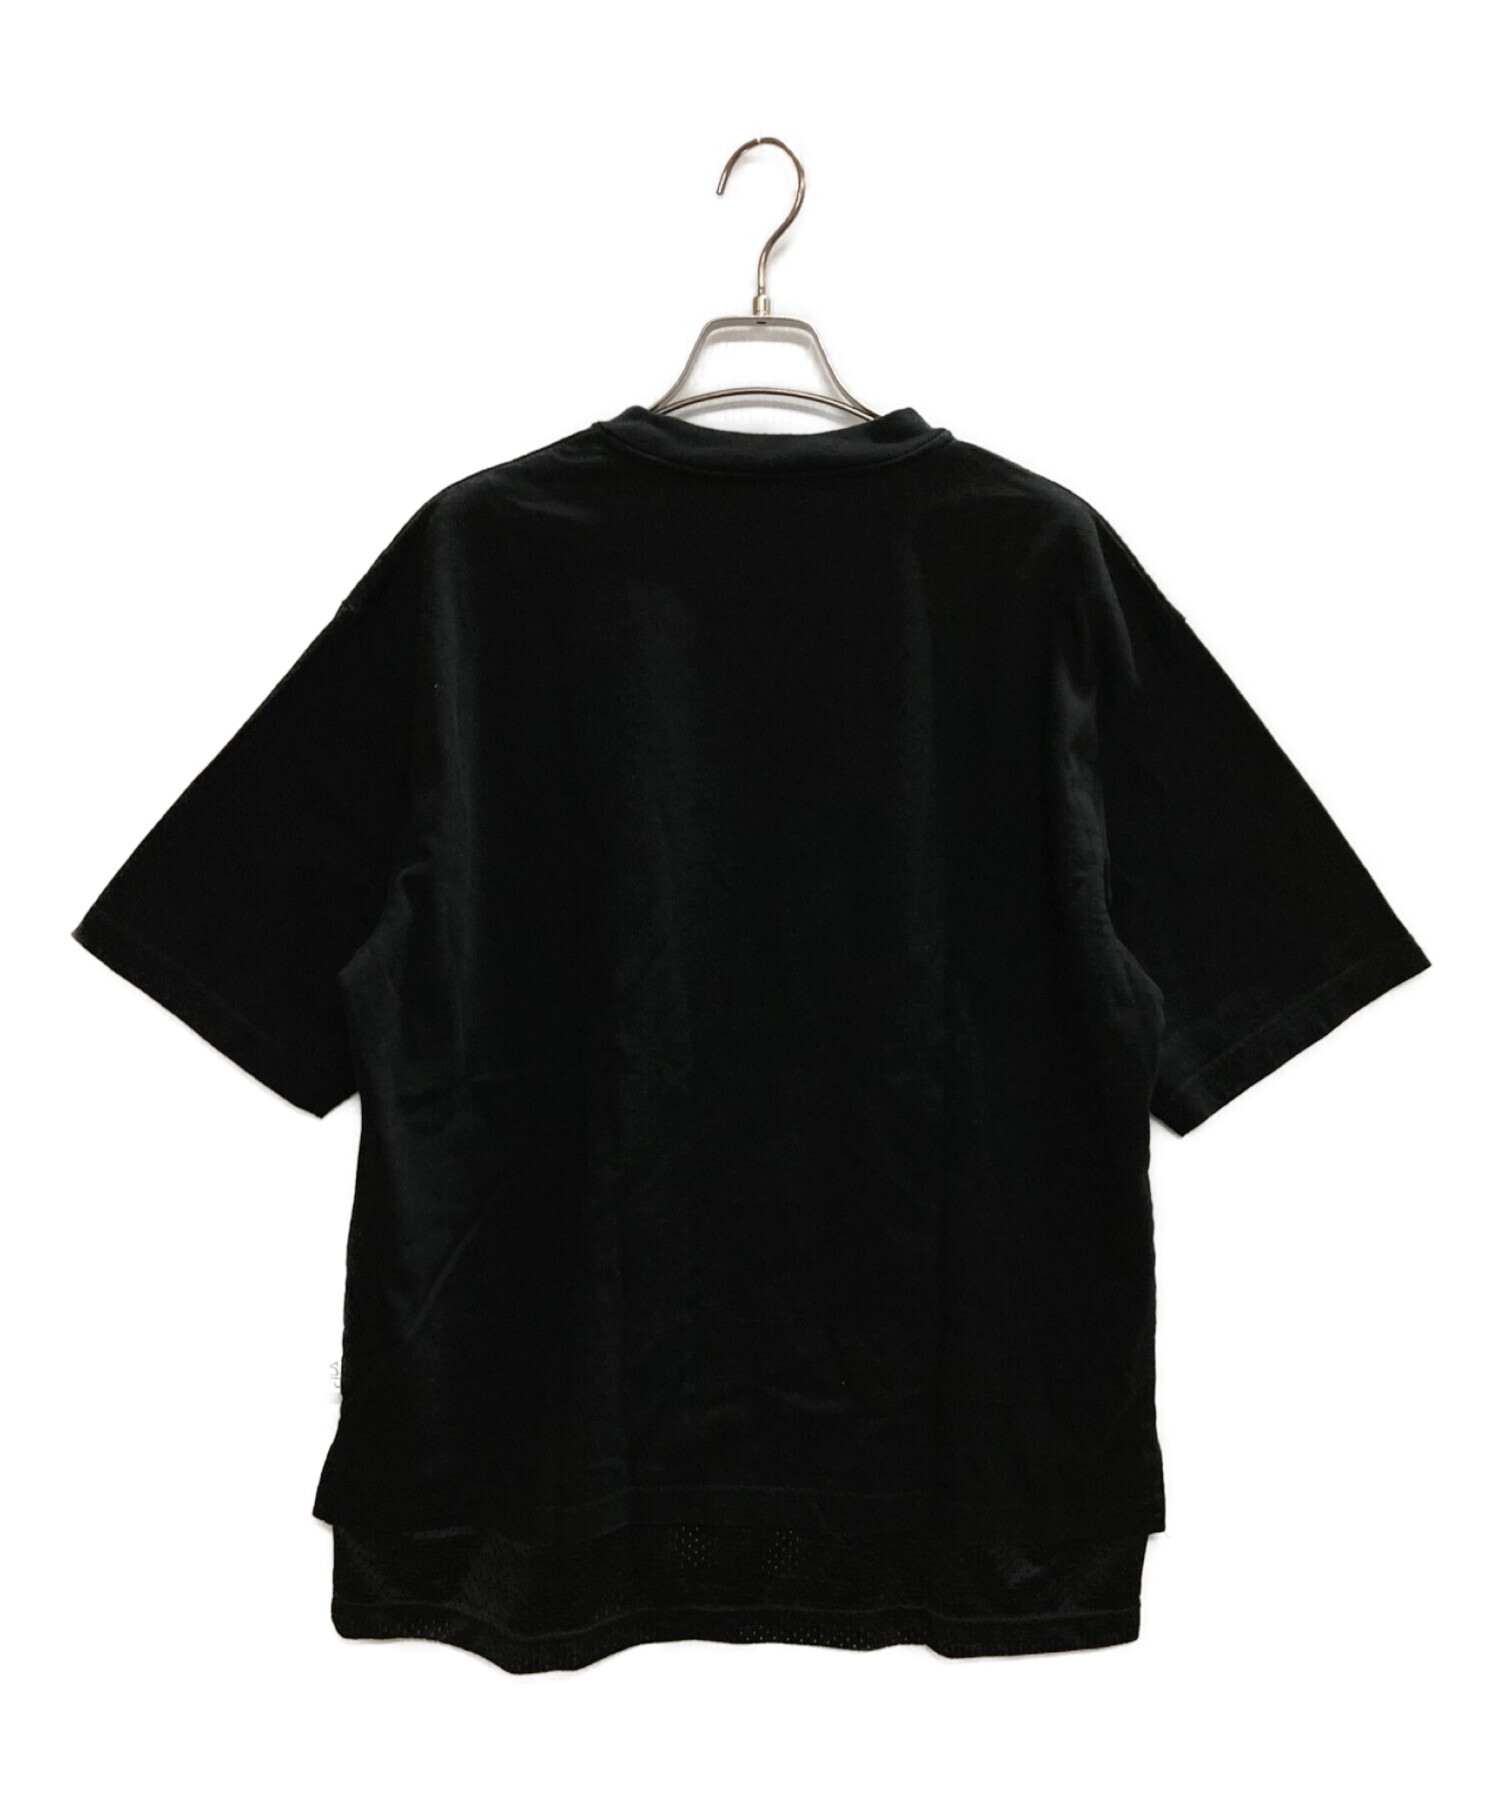 N゜21×FILA (ヌメロヴェントゥーノ×フィラ) プリントメッシュ切替Tシャツ ブラック サイズ:Ｍ